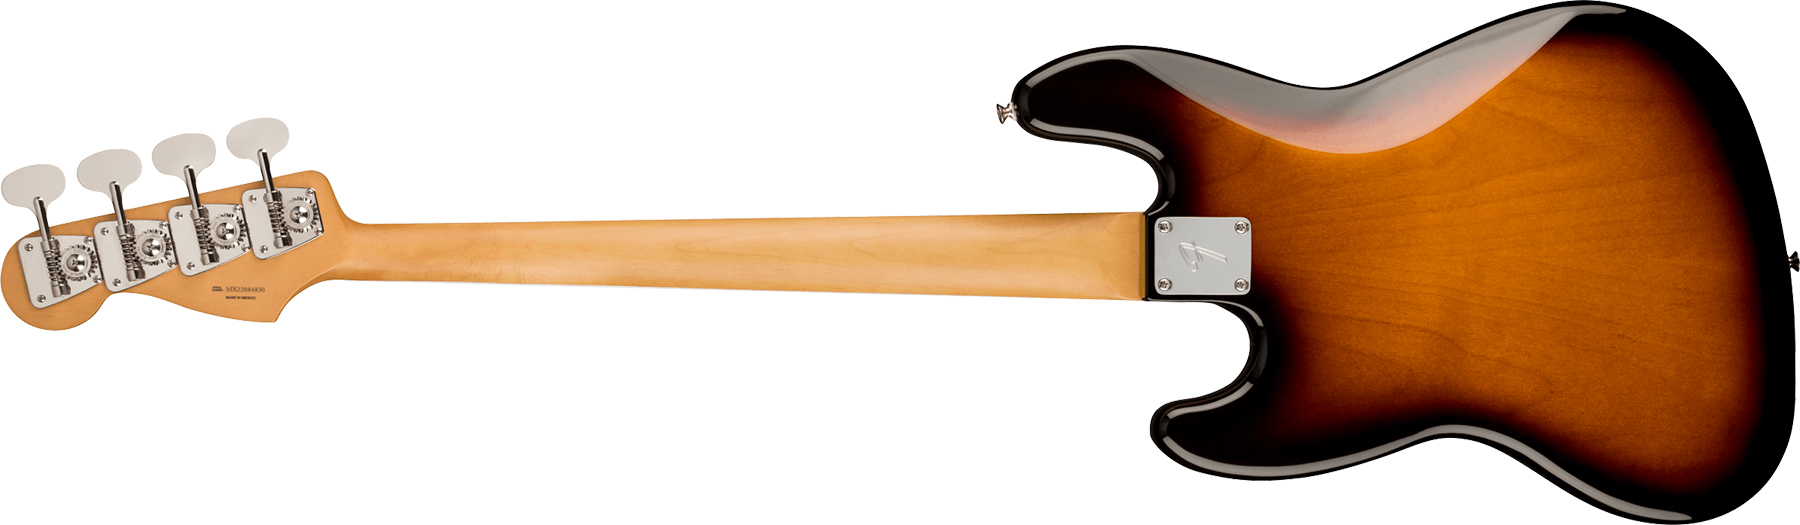 Fender Jazz Bass Gold Foil Ltd Mex Eb - 2-color Sunburst - Basse Électrique Solid Body - Variation 1